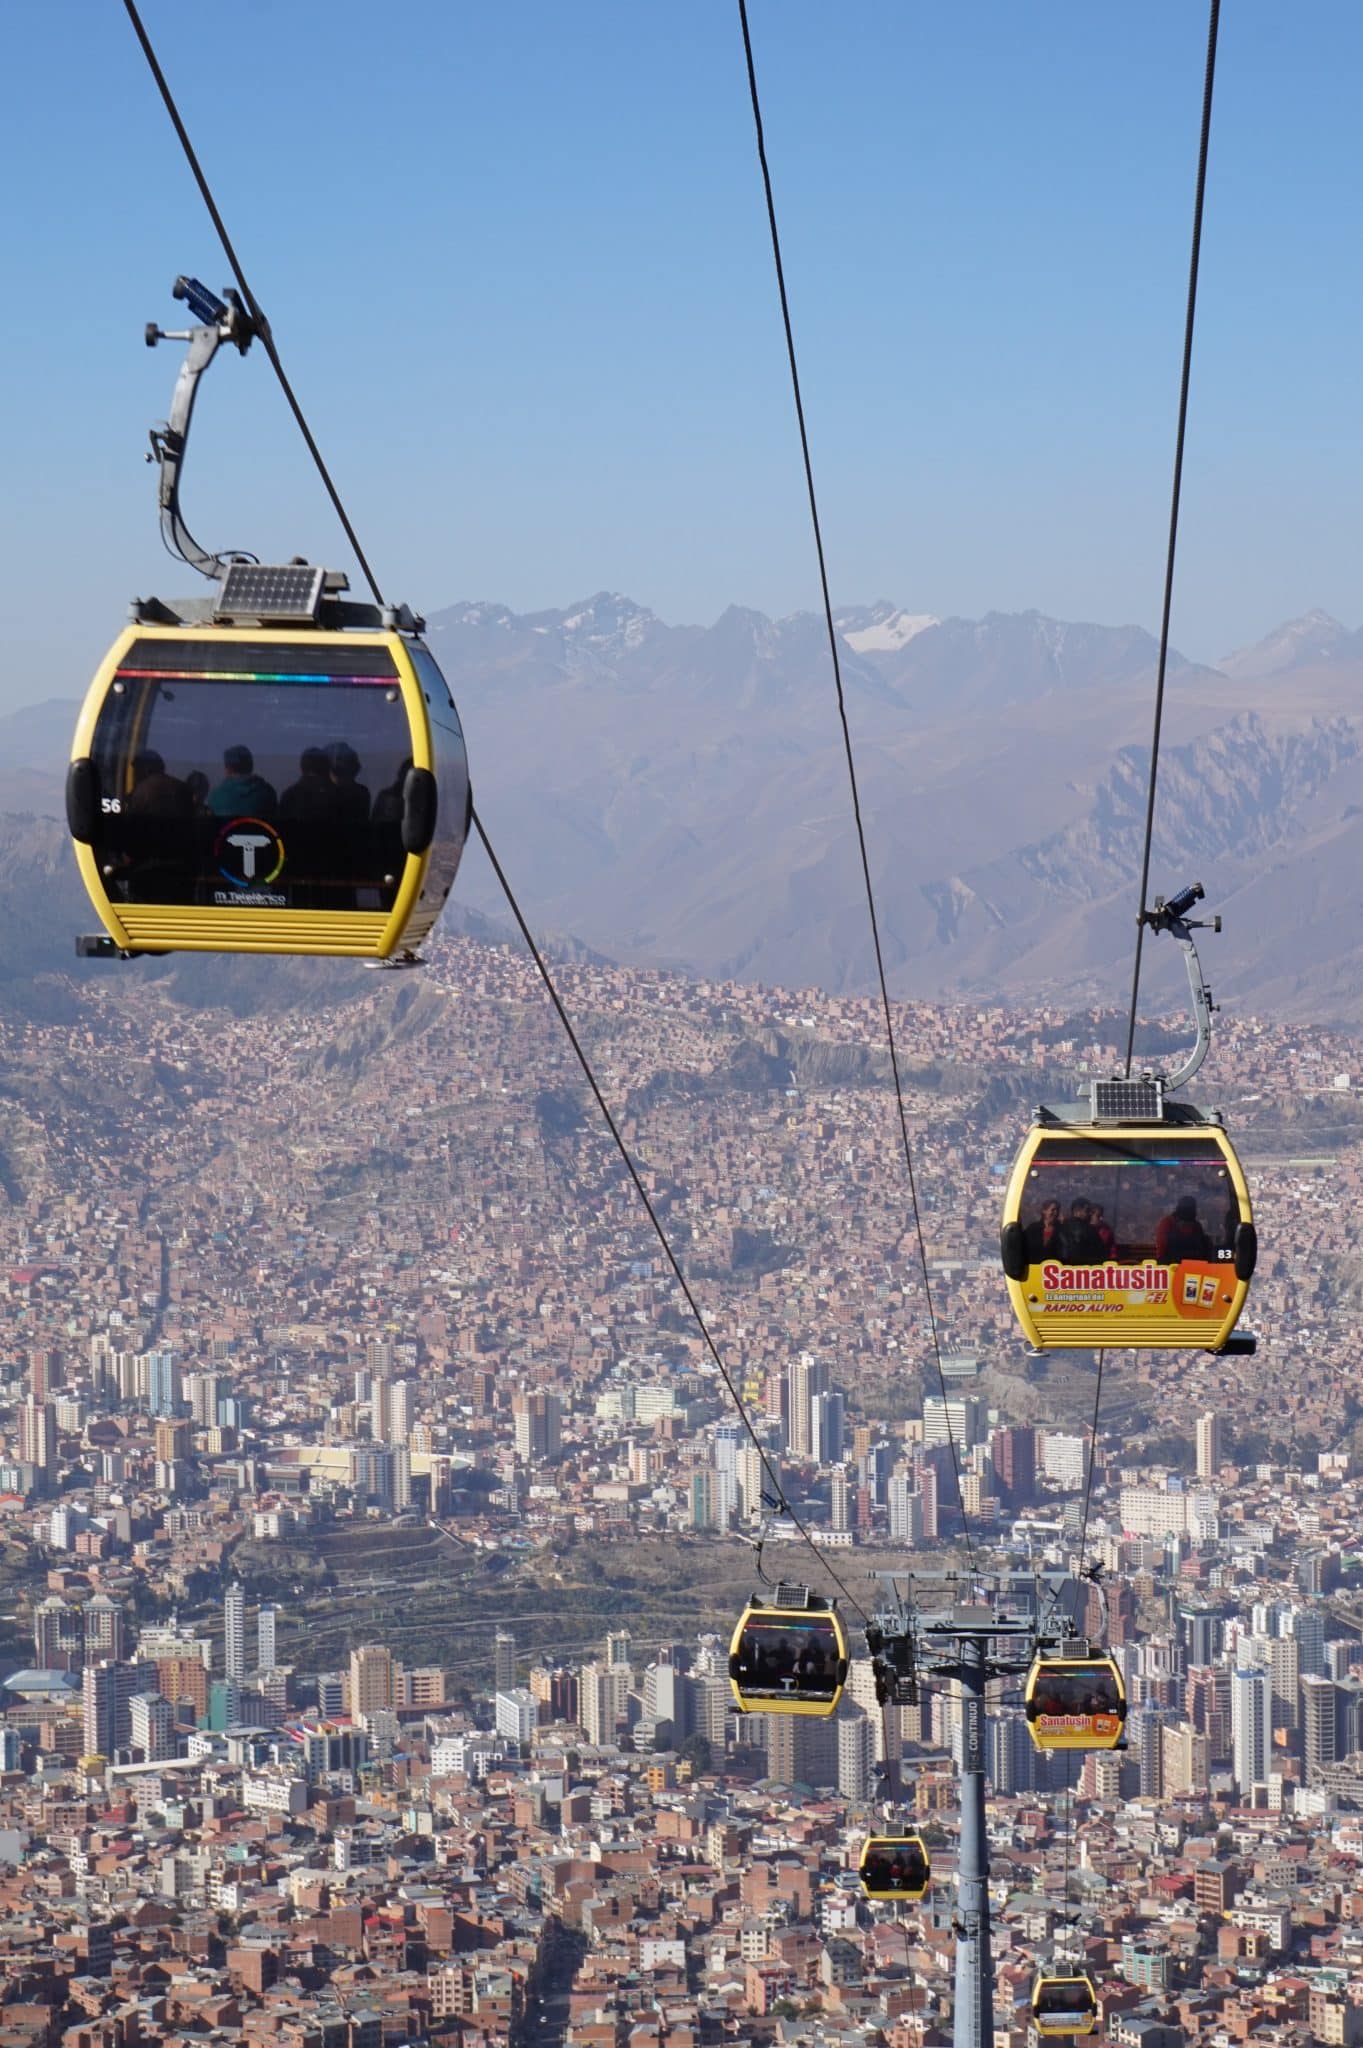 Téléphérique à La Paz en Bolivie dans notre article Voyage en Bolivie : que voir et que faire en Bolivie en 5 expériences incroyables #Bolivie #Voyage #AmériqueduSud #IncontournablesBolivie #QueVoirBolivie